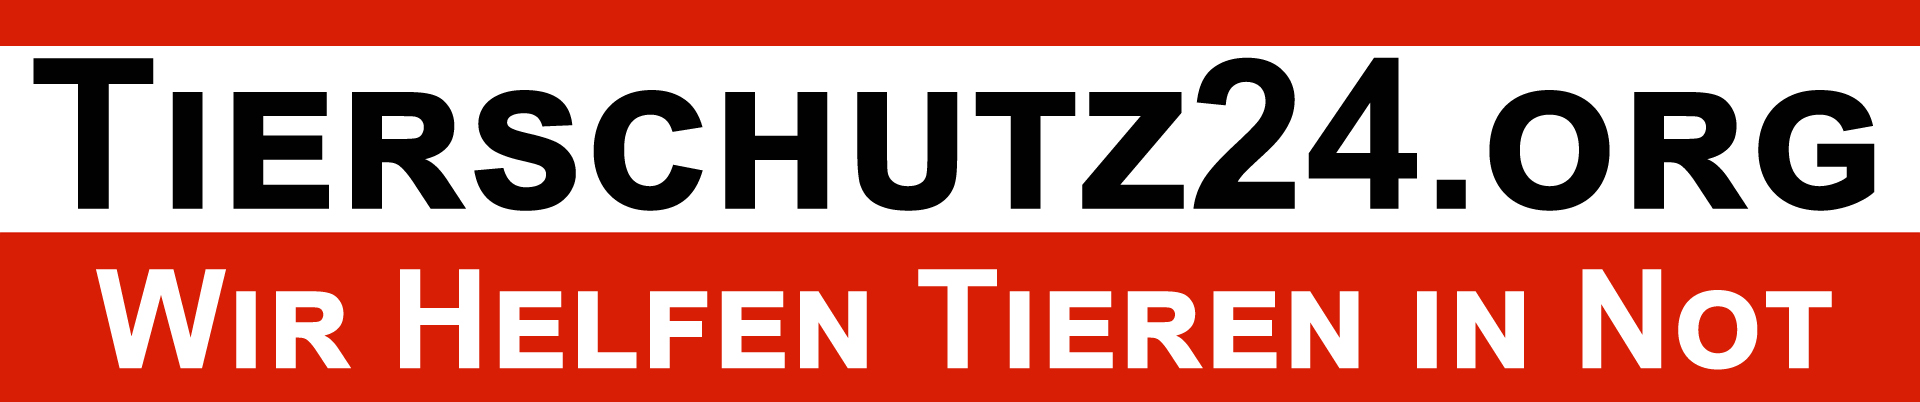 tierschutz24.org